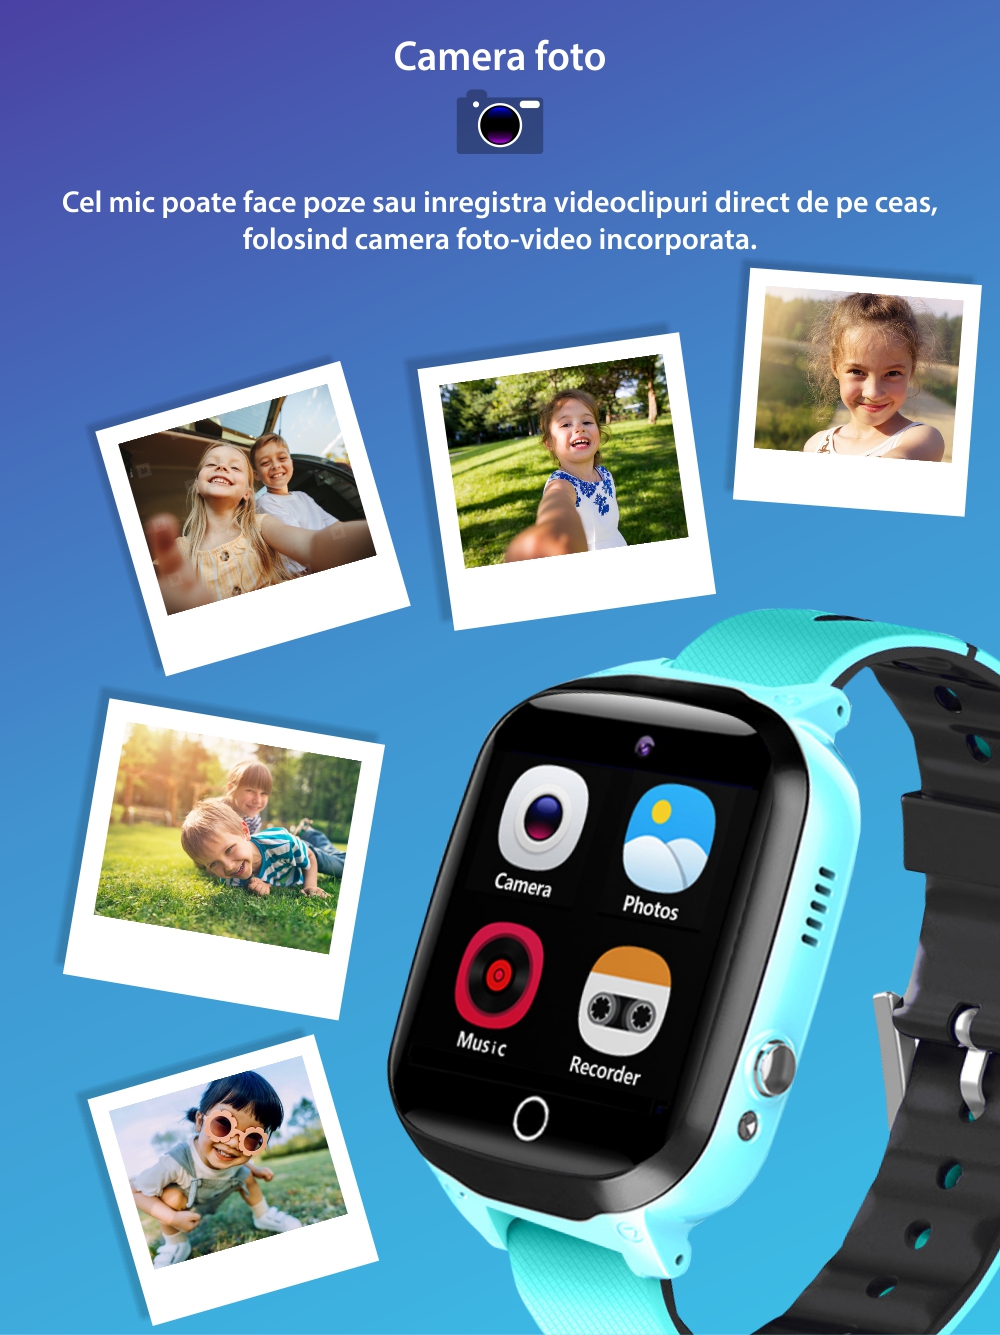 Ceas Smartwatch Pentru Copii YQT Q13G, fara GPS, cu Functie telefon, 7 Jocuri, Camera, Album, Lanterna, Albastru